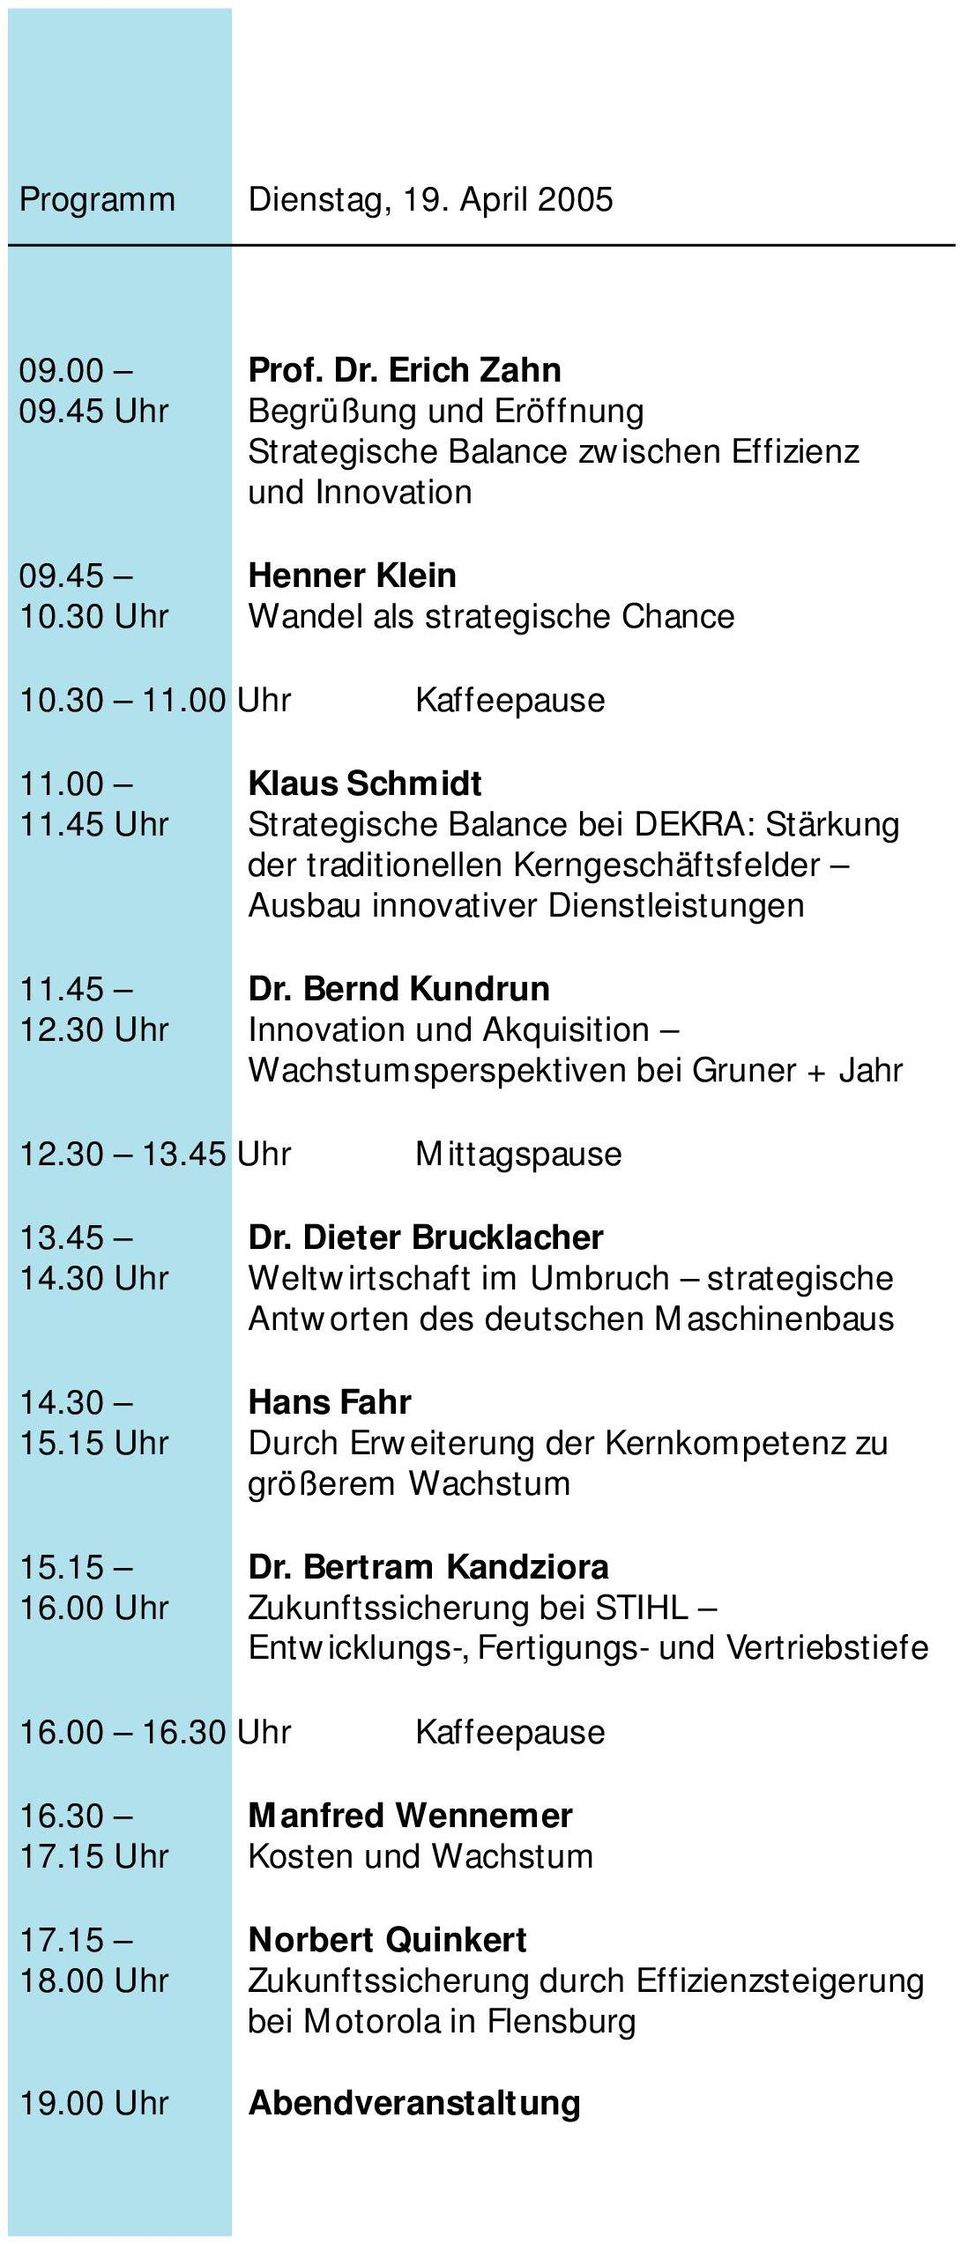 45 Uhr Strategische Balance bei DEKRA: Stärkung der traditionellen Kerngeschäftsfelder Ausbau innovativer Dienstleistungen 11.45 Dr. Bernd Kundrun 12.